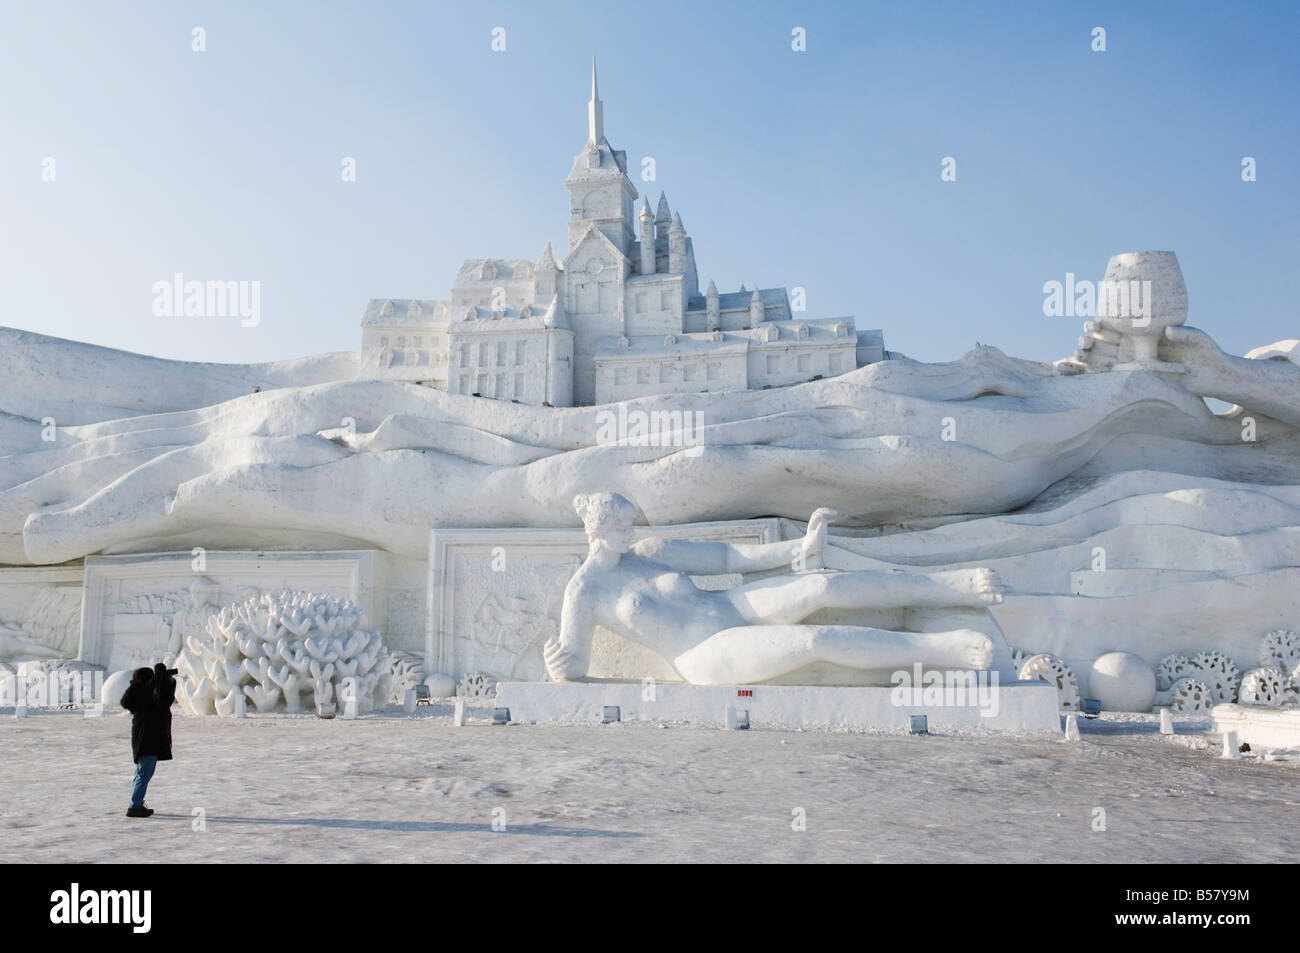 Personne photographier une sculpture géante au festival de sculpture sur neige et sur glace sur Sun Island Park, la province de Heilongjiang, Chine Banque D'Images